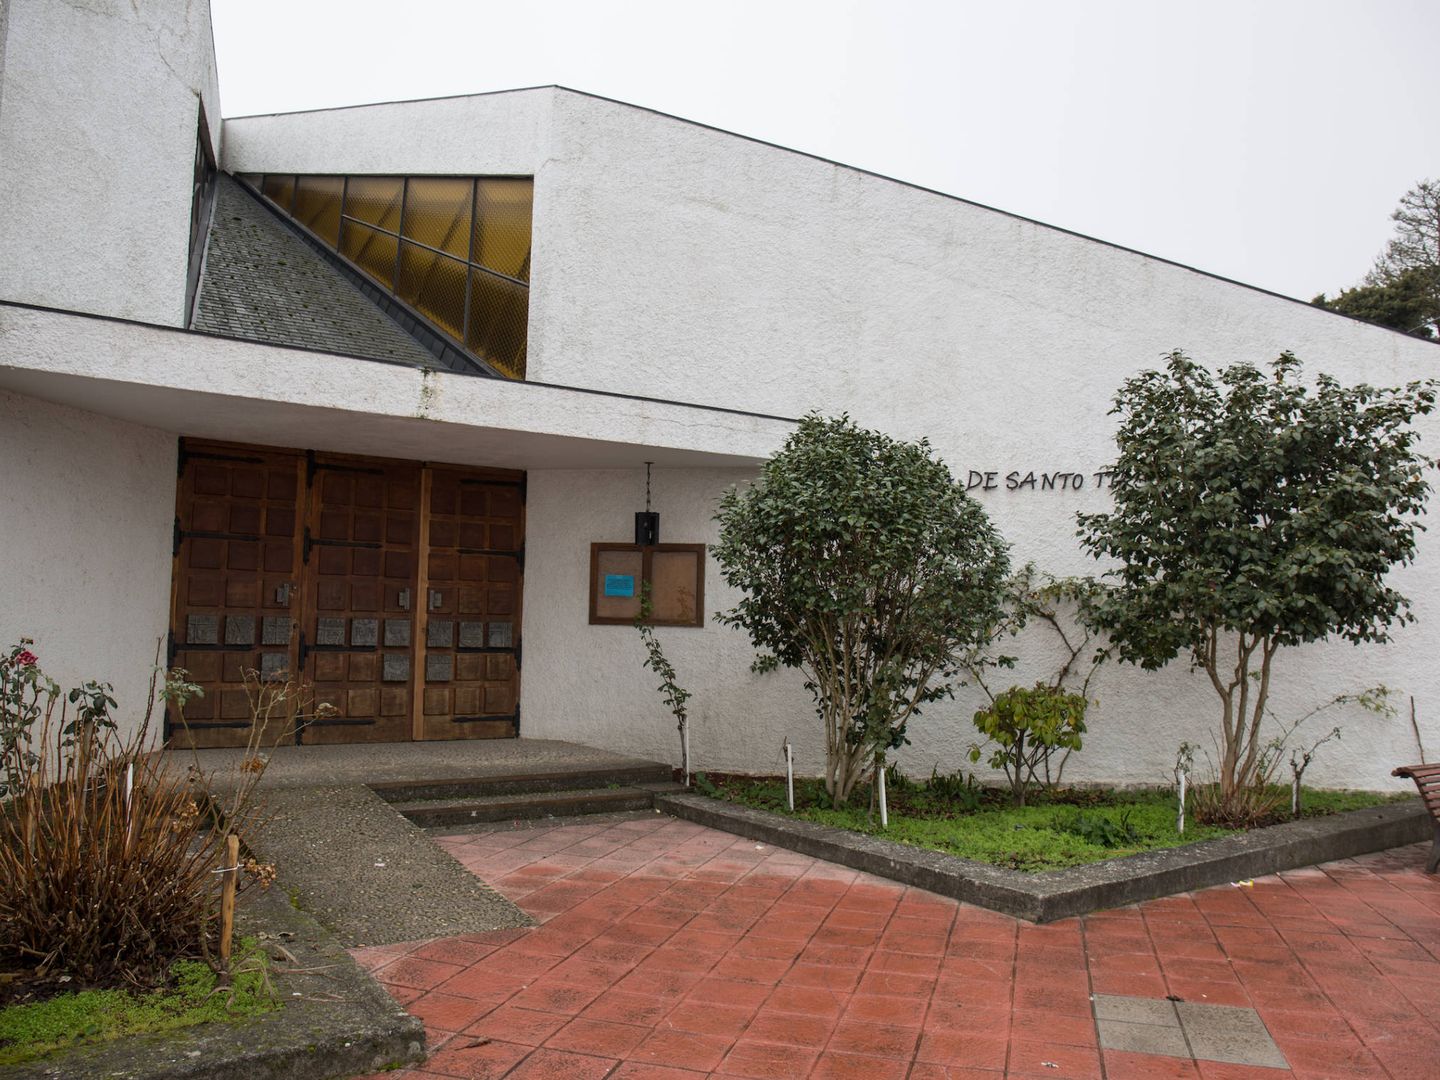 La iglesia de Santo Telmo, en Veigamuíños, permanece cerrada desde el 1 de enero. (D.B.)